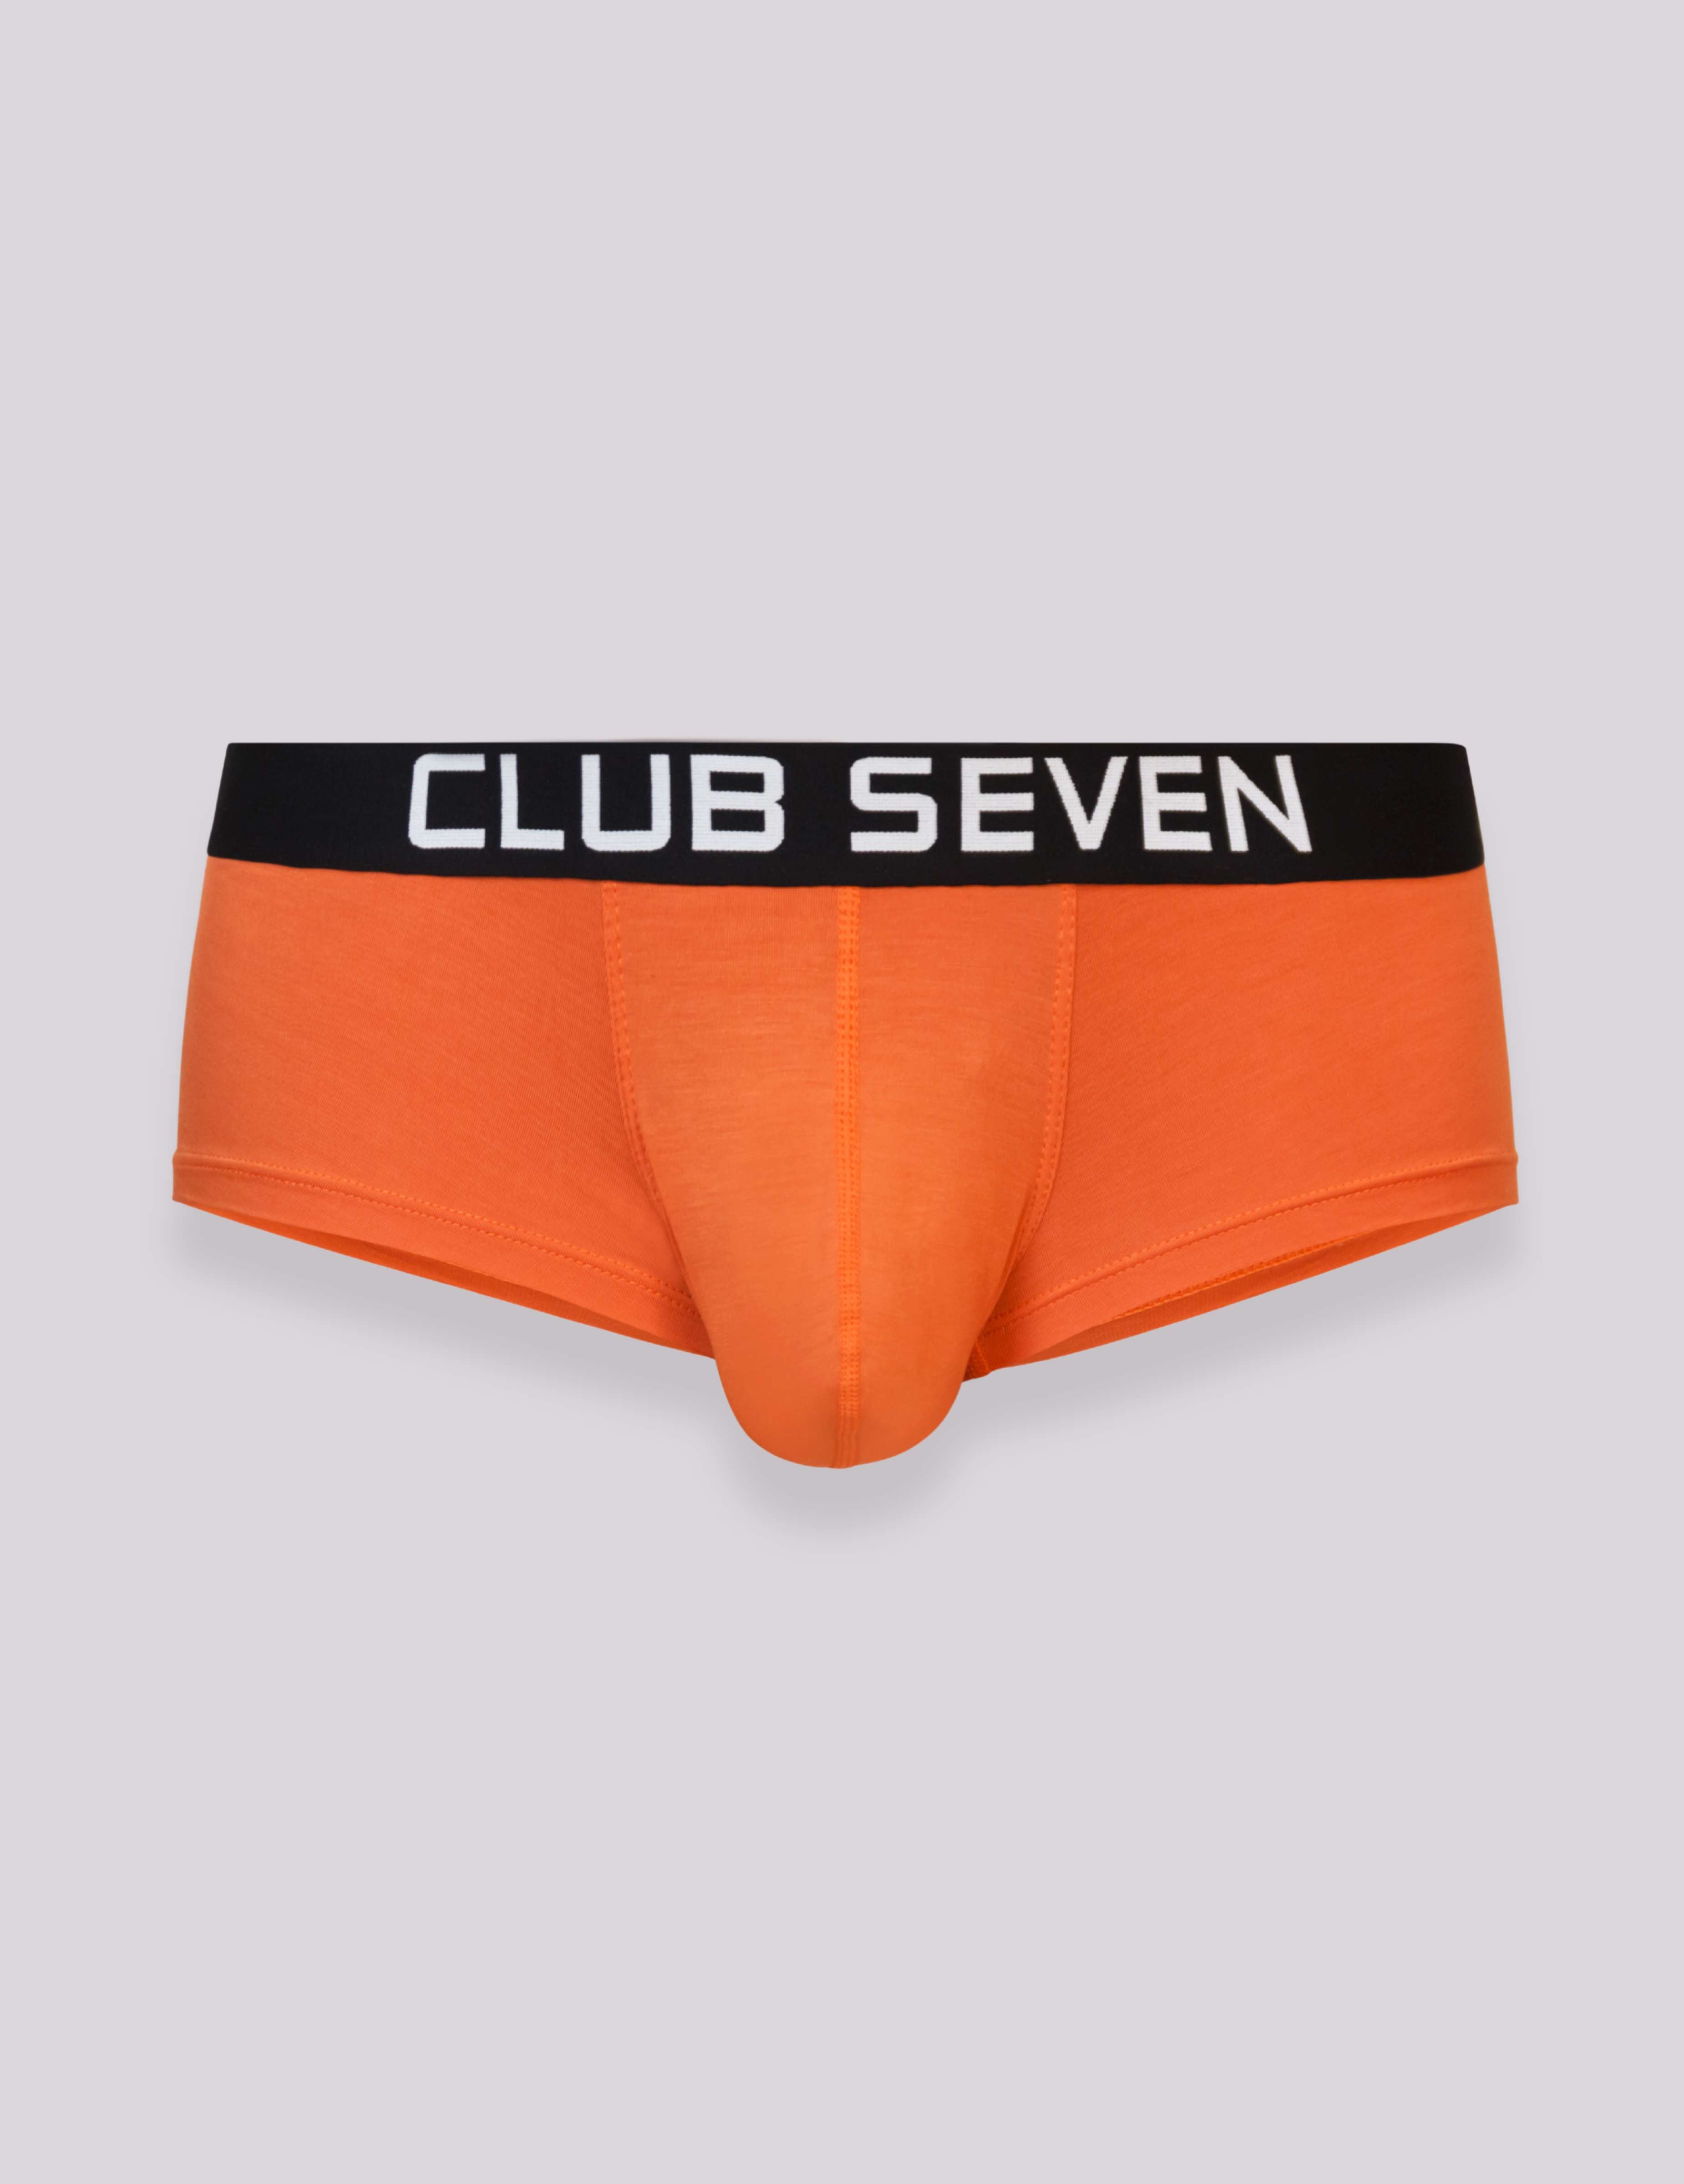 men modal fabric underwear briefs - underwear in a box - Mens boxes - footballer in underwear - Club Seven Menswear - gay men underwear - men bulge underwear